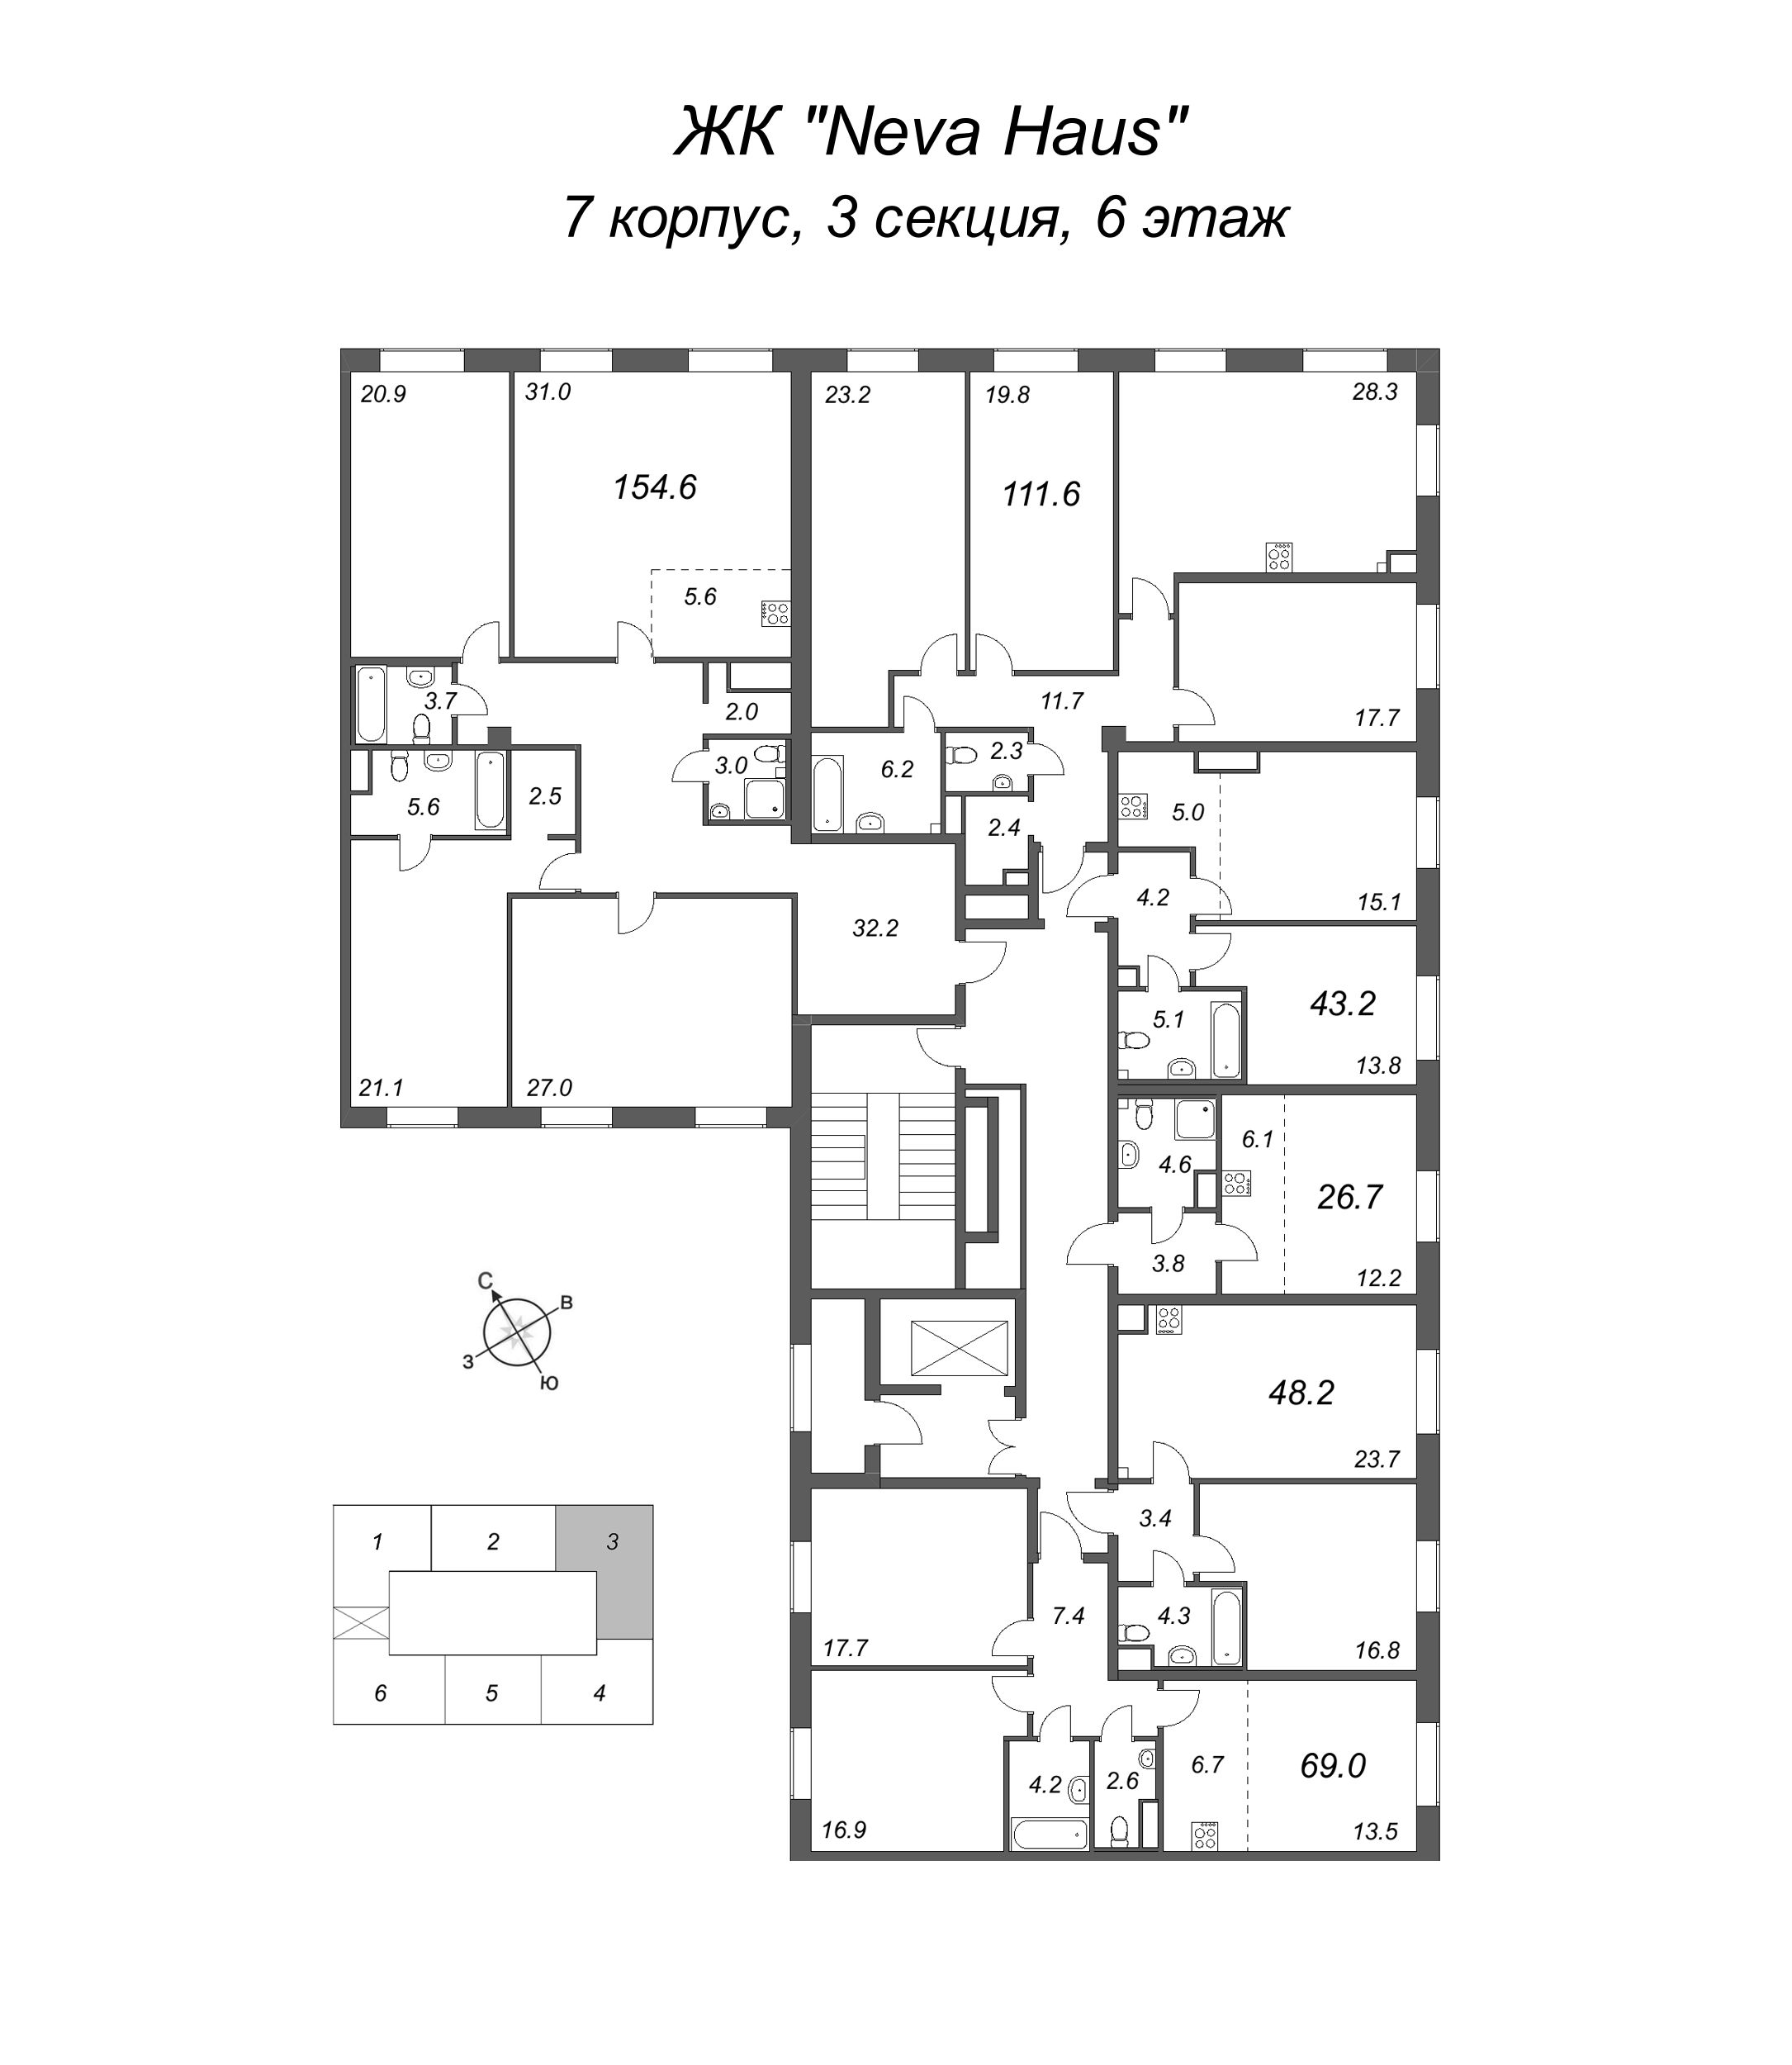 4-комнатная (Евро) квартира, 112.5 м² в ЖК "Neva Haus" - планировка этажа